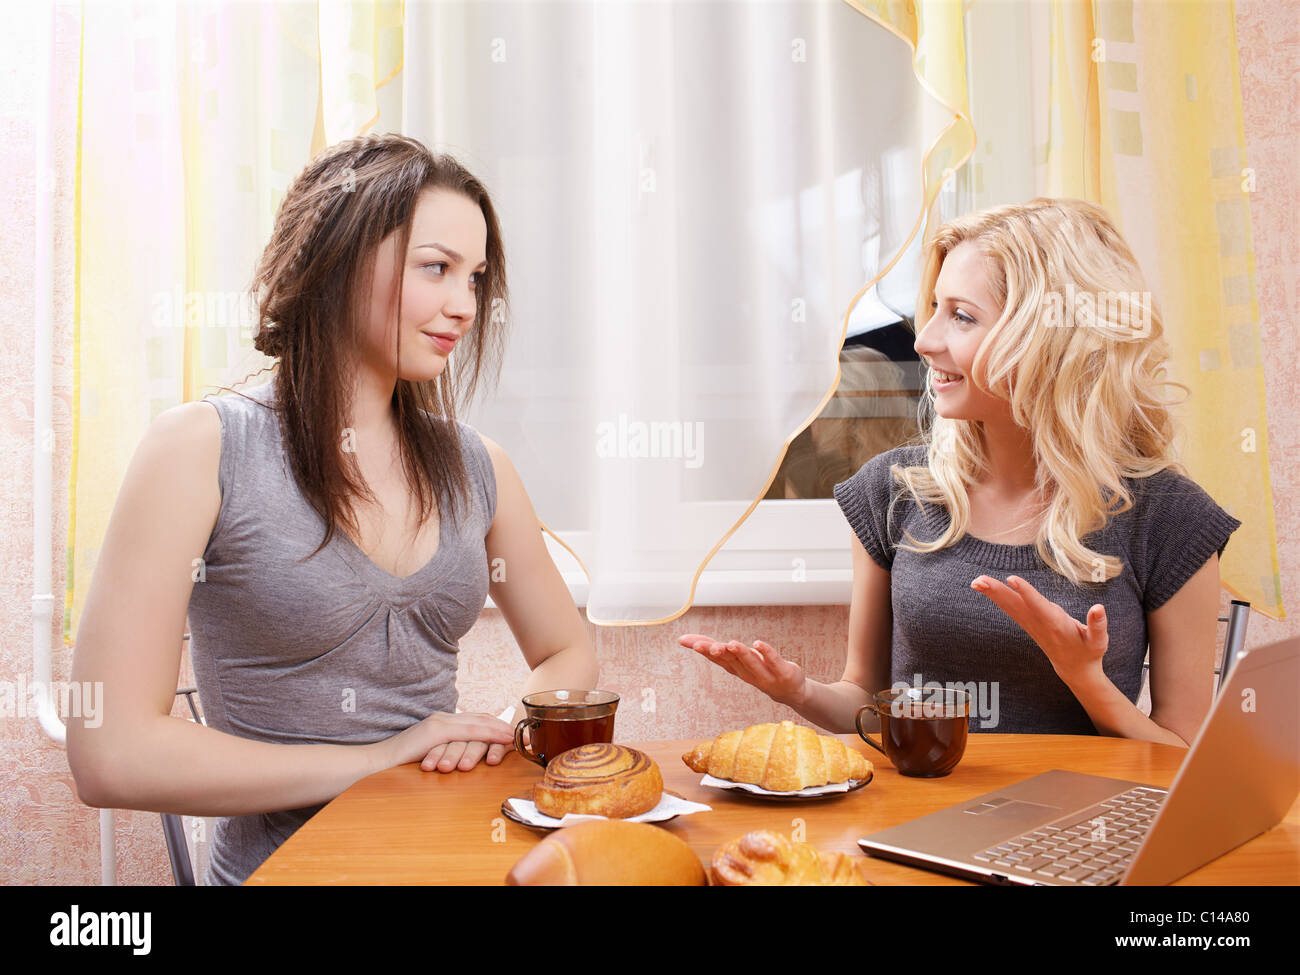 Общаться с подругами мужа. Две девушки за столом. Подруги за столом. Чаепитие с подругами. Две женщины сидят за столом.